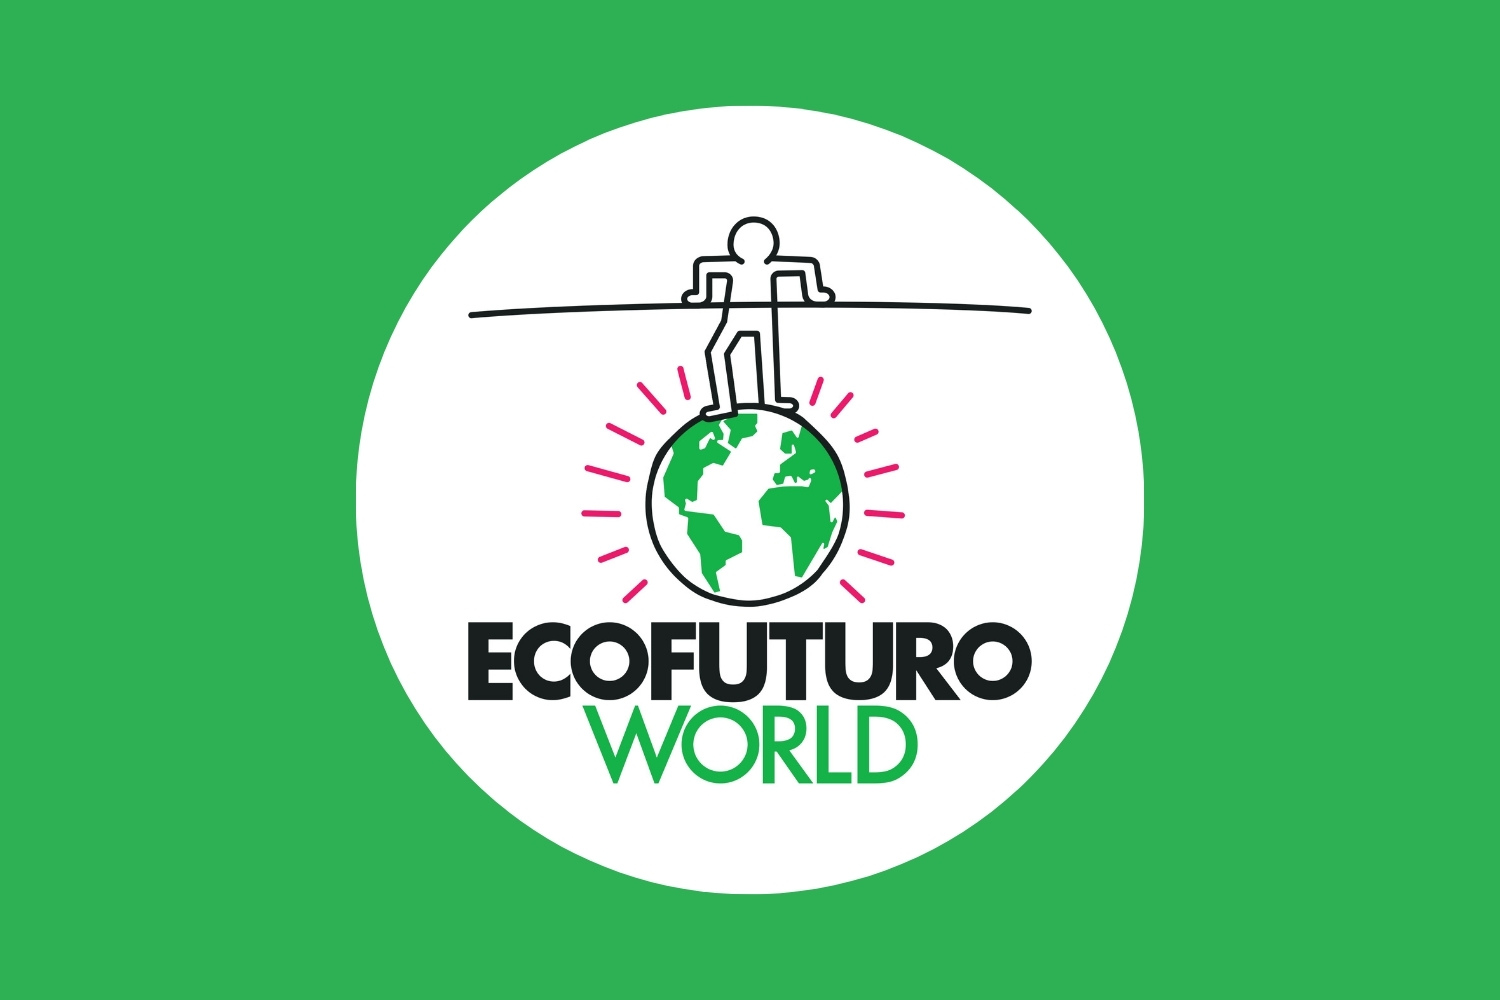 Ecofuturo World